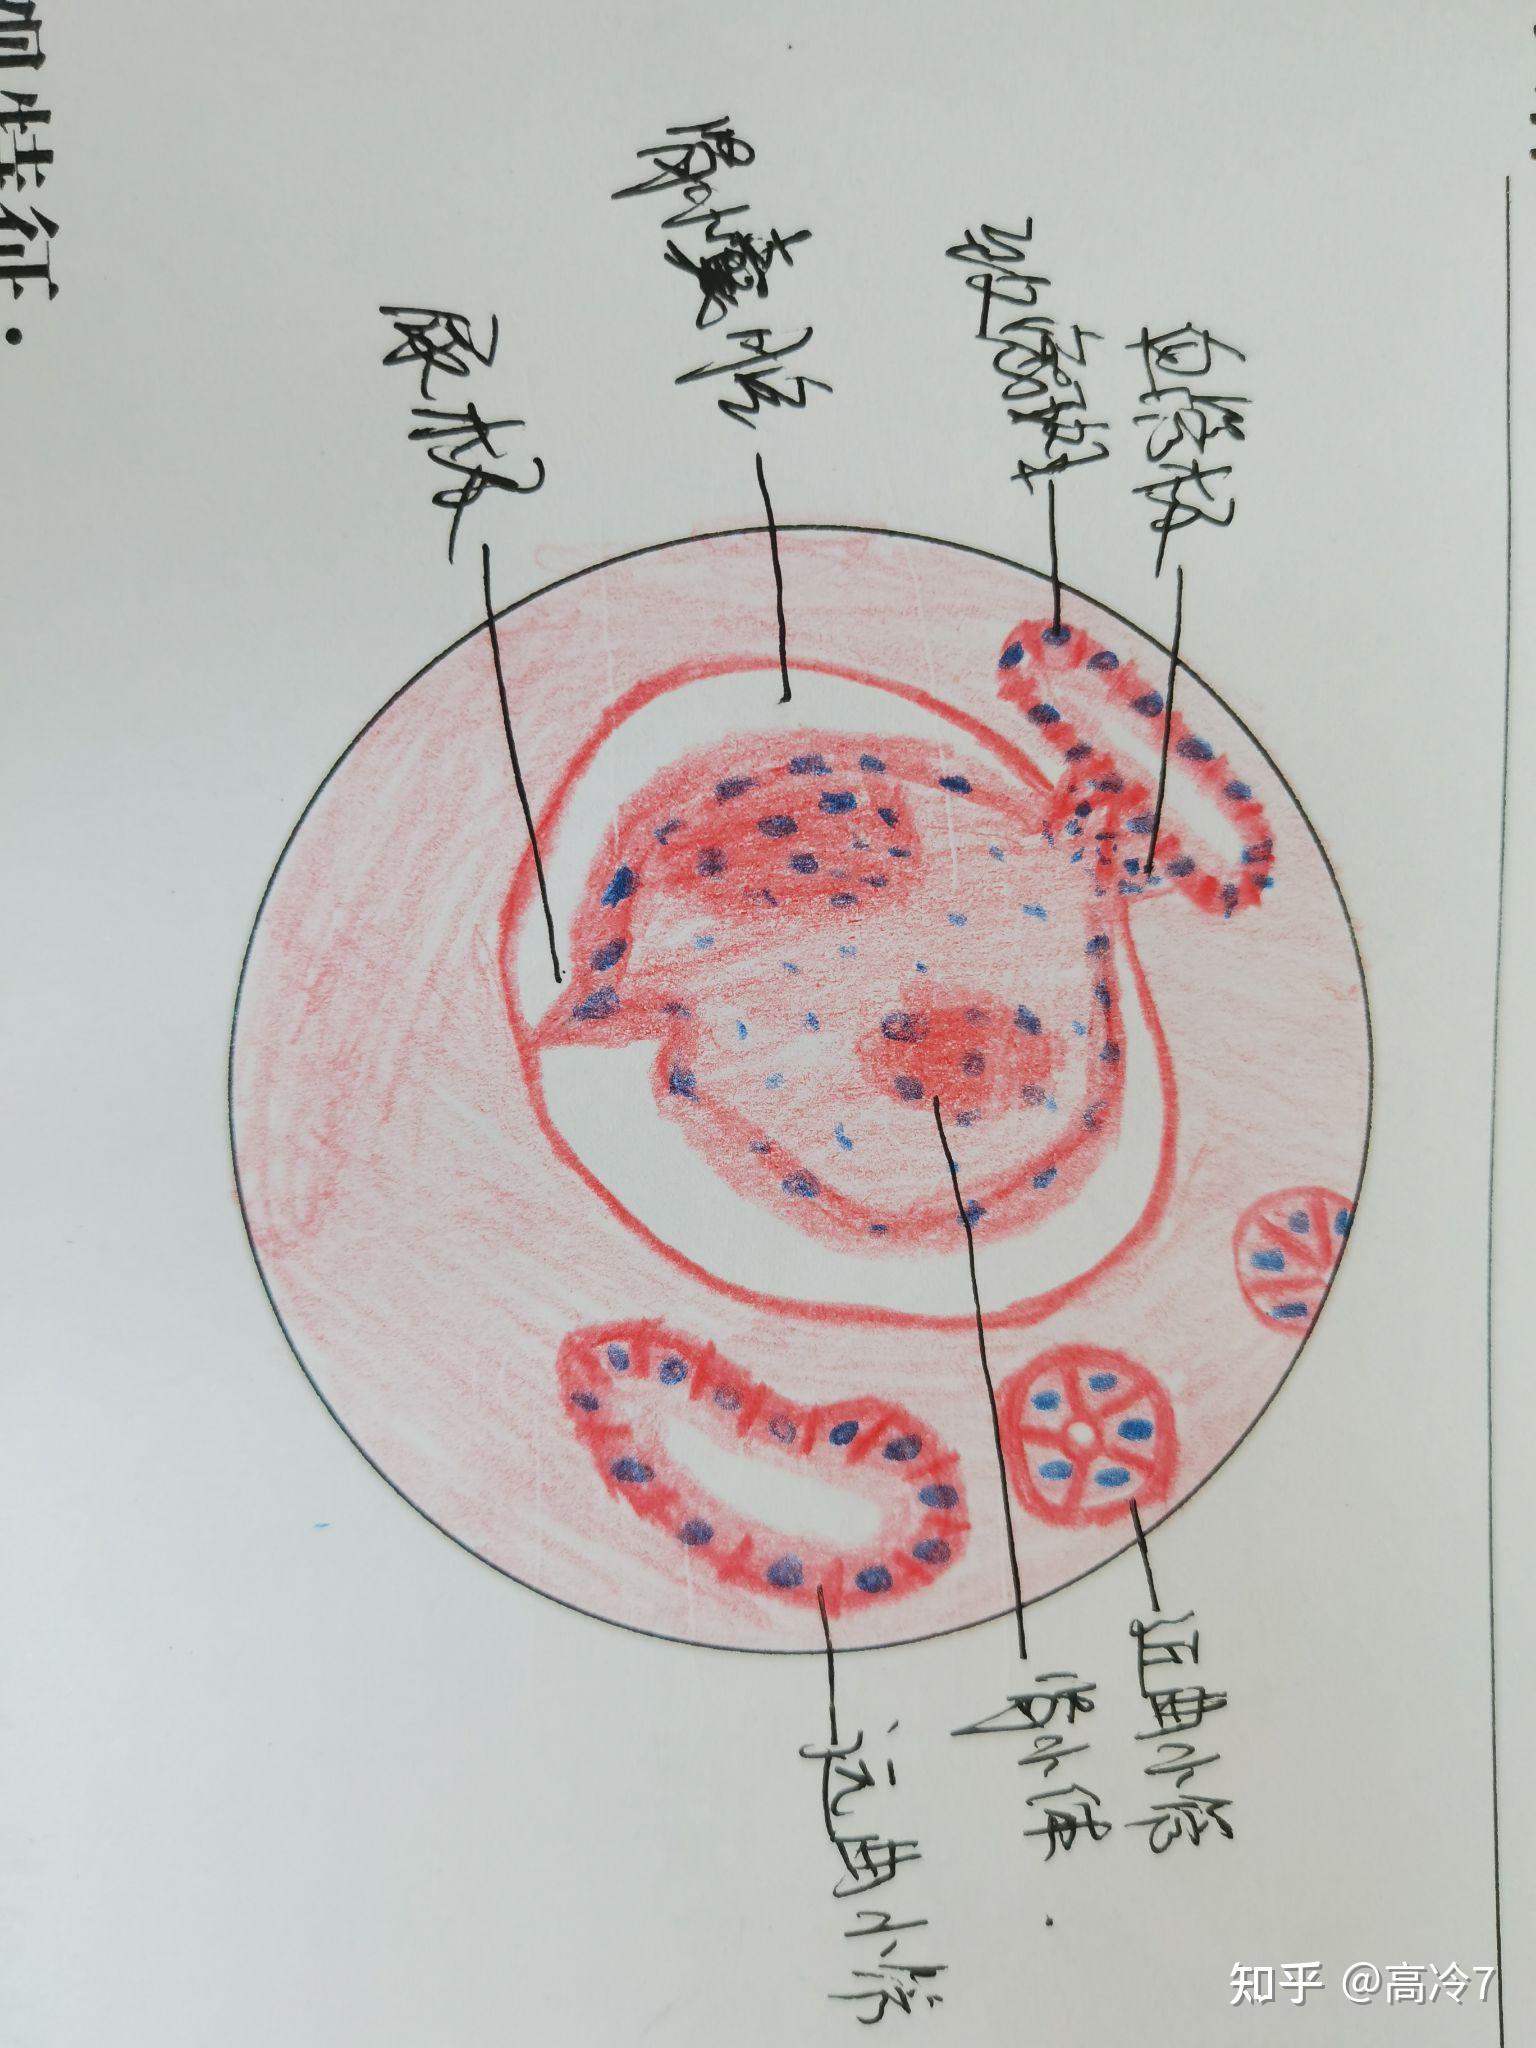 肾上腺皮质组胚绘图图片